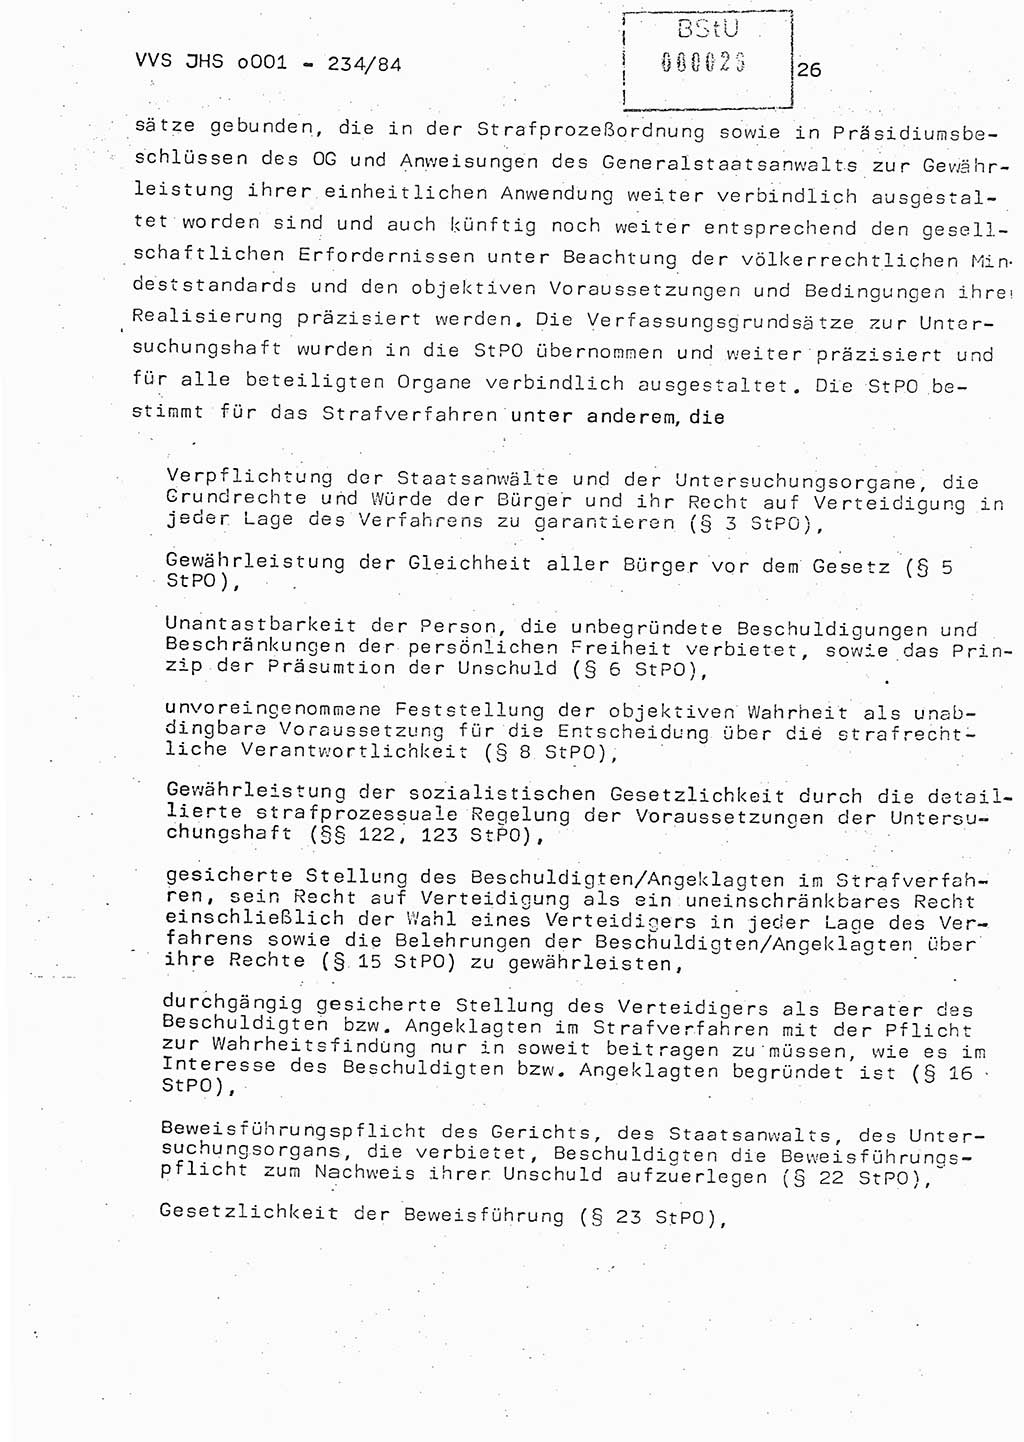 Dissertation Oberst Siegfried Rataizick (Abt. ⅩⅣ), Oberstleutnant Volkmar Heinz (Abt. ⅩⅣ), Oberstleutnant Werner Stein (HA Ⅸ), Hauptmann Heinz Conrad (JHS), Ministerium für Staatssicherheit (MfS) [Deutsche Demokratische Republik (DDR)], Juristische Hochschule (JHS), Vertrauliche Verschlußsache (VVS) o001-234/84, Potsdam 1984, Seite 26 (Diss. MfS DDR JHS VVS o001-234/84 1984, S. 26)